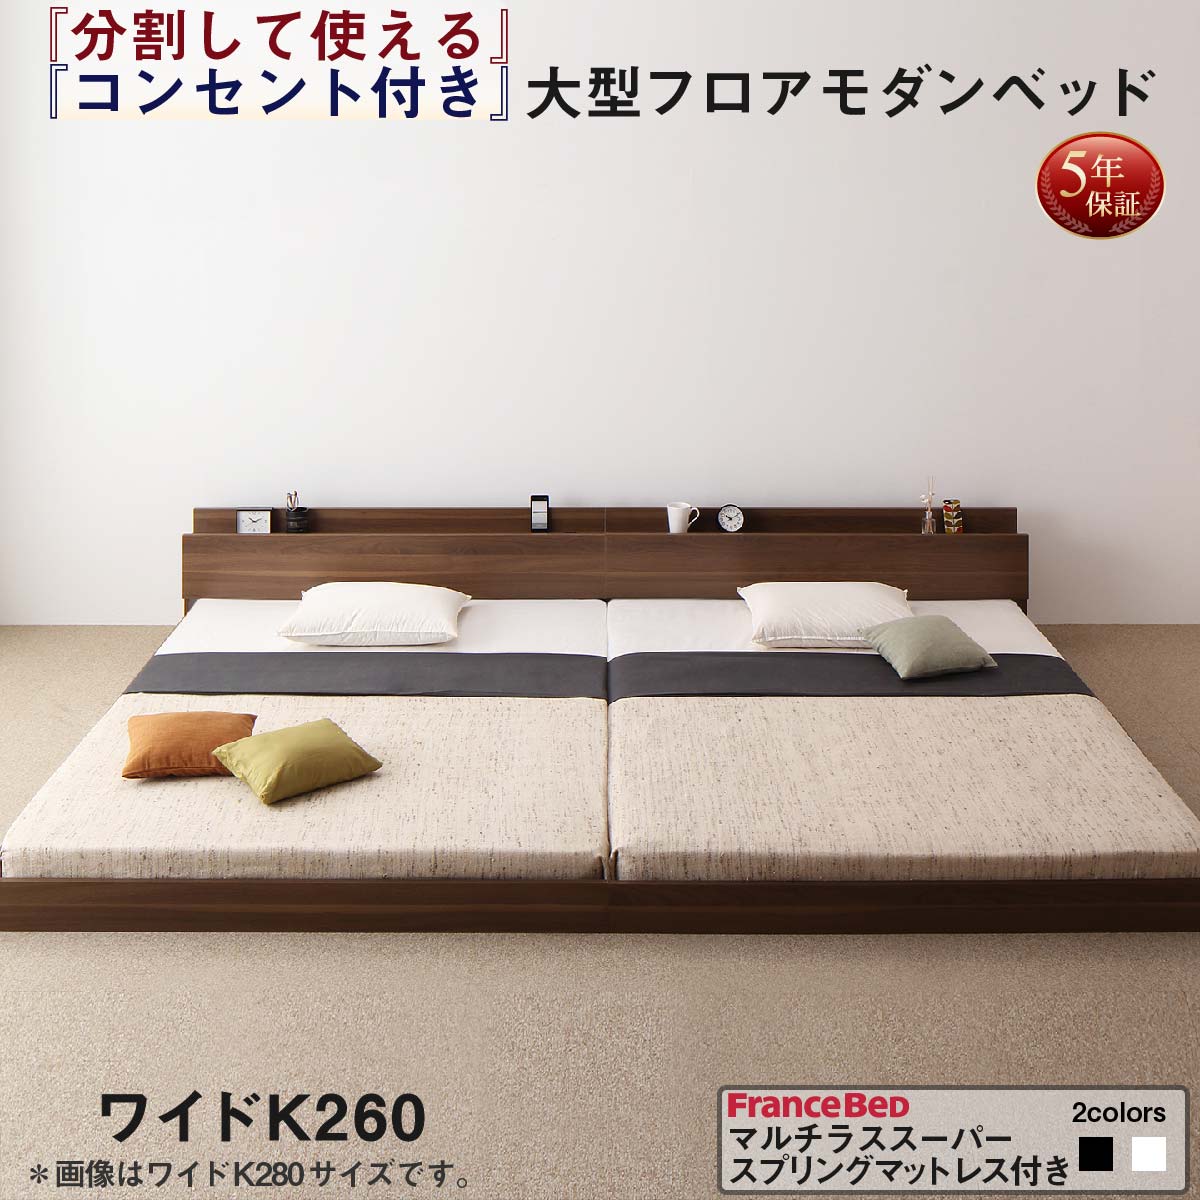 安い売筋品 連結ベッド 大型ベッド ファミリー 連結 家族ベッド